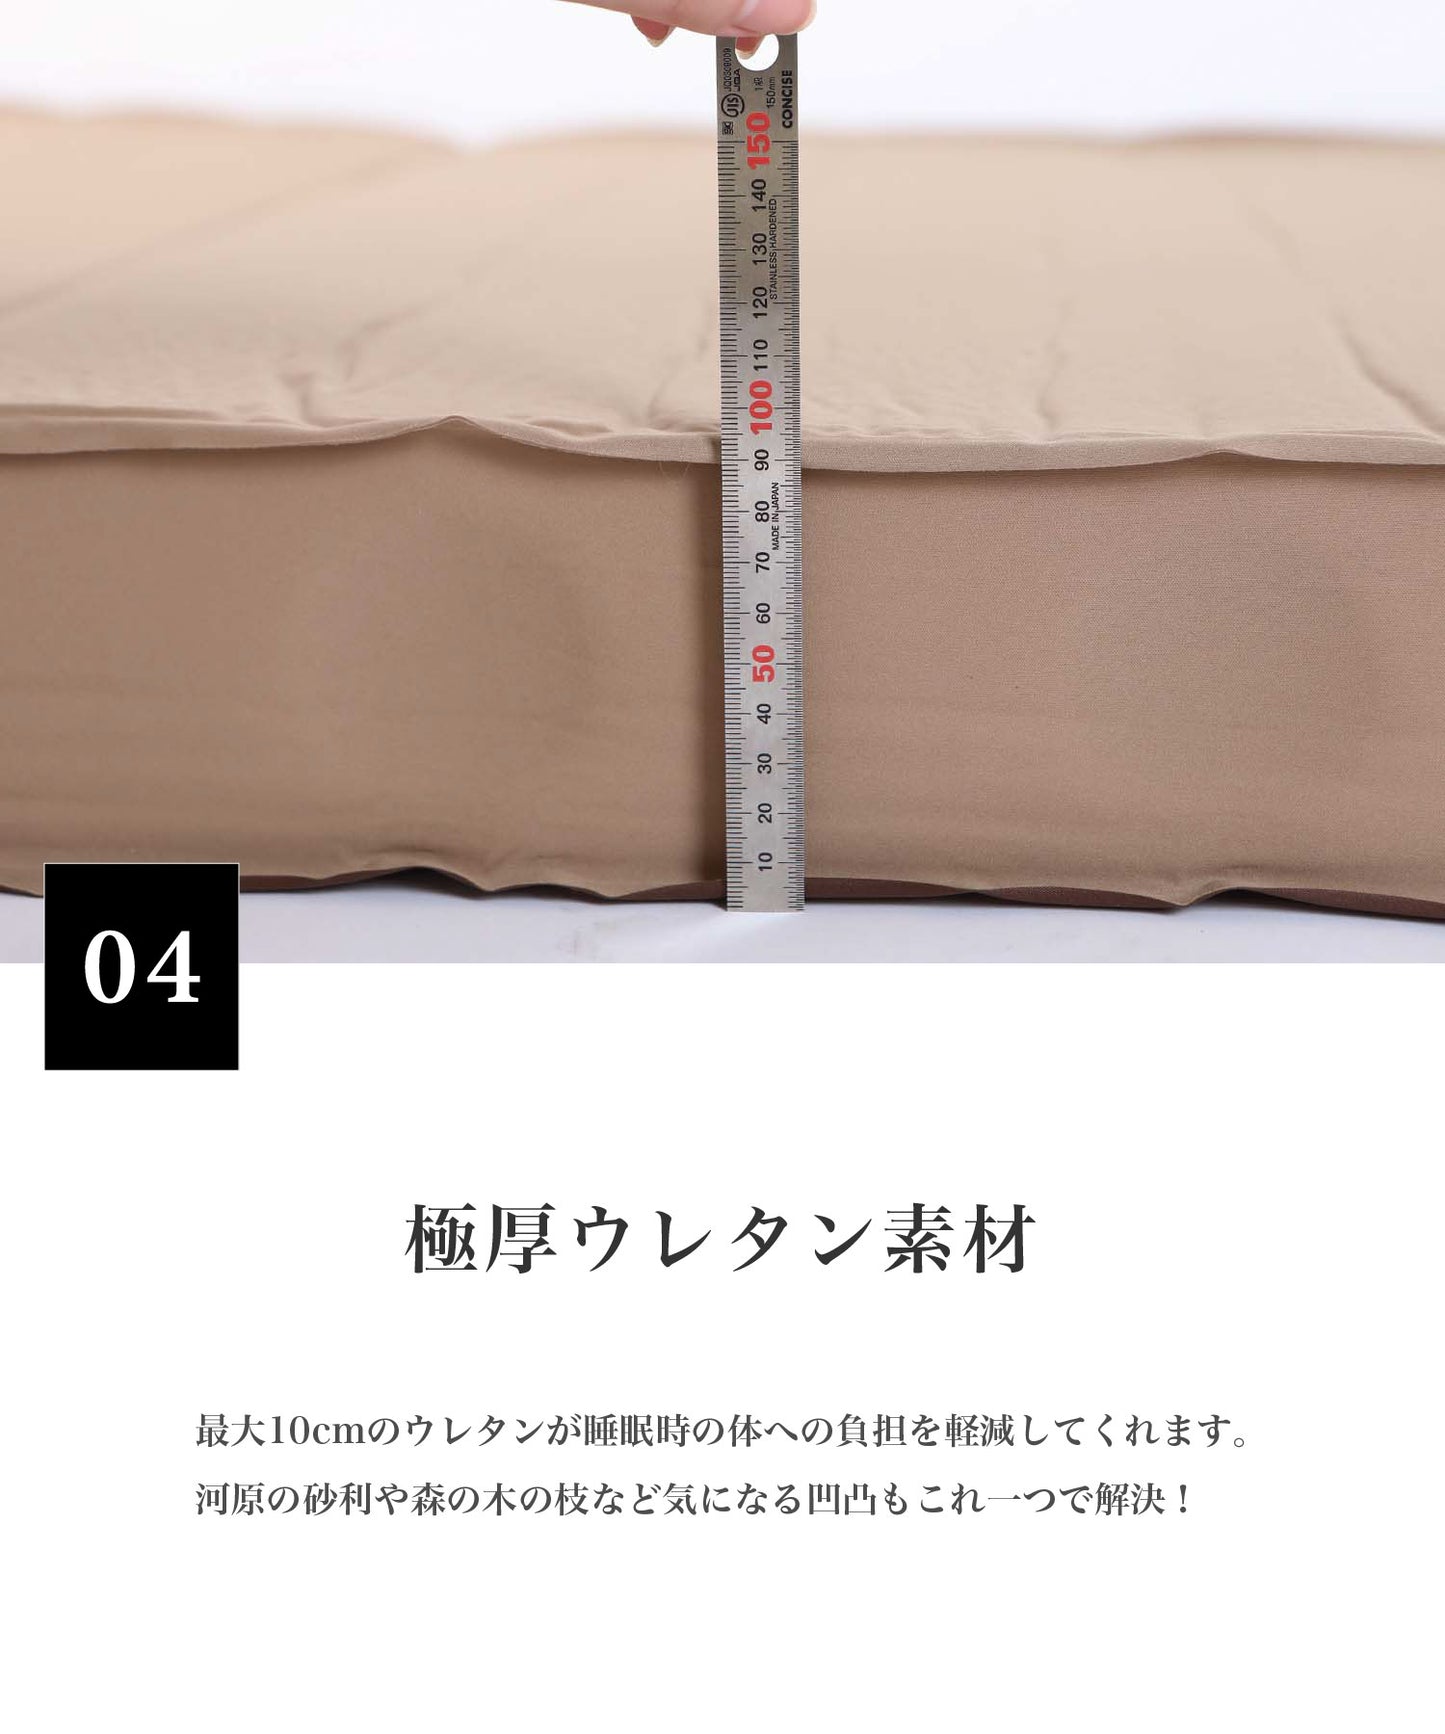 【OYASUMI MAT S】シングルサイズのの折り畳み可能なキャンプ用マット